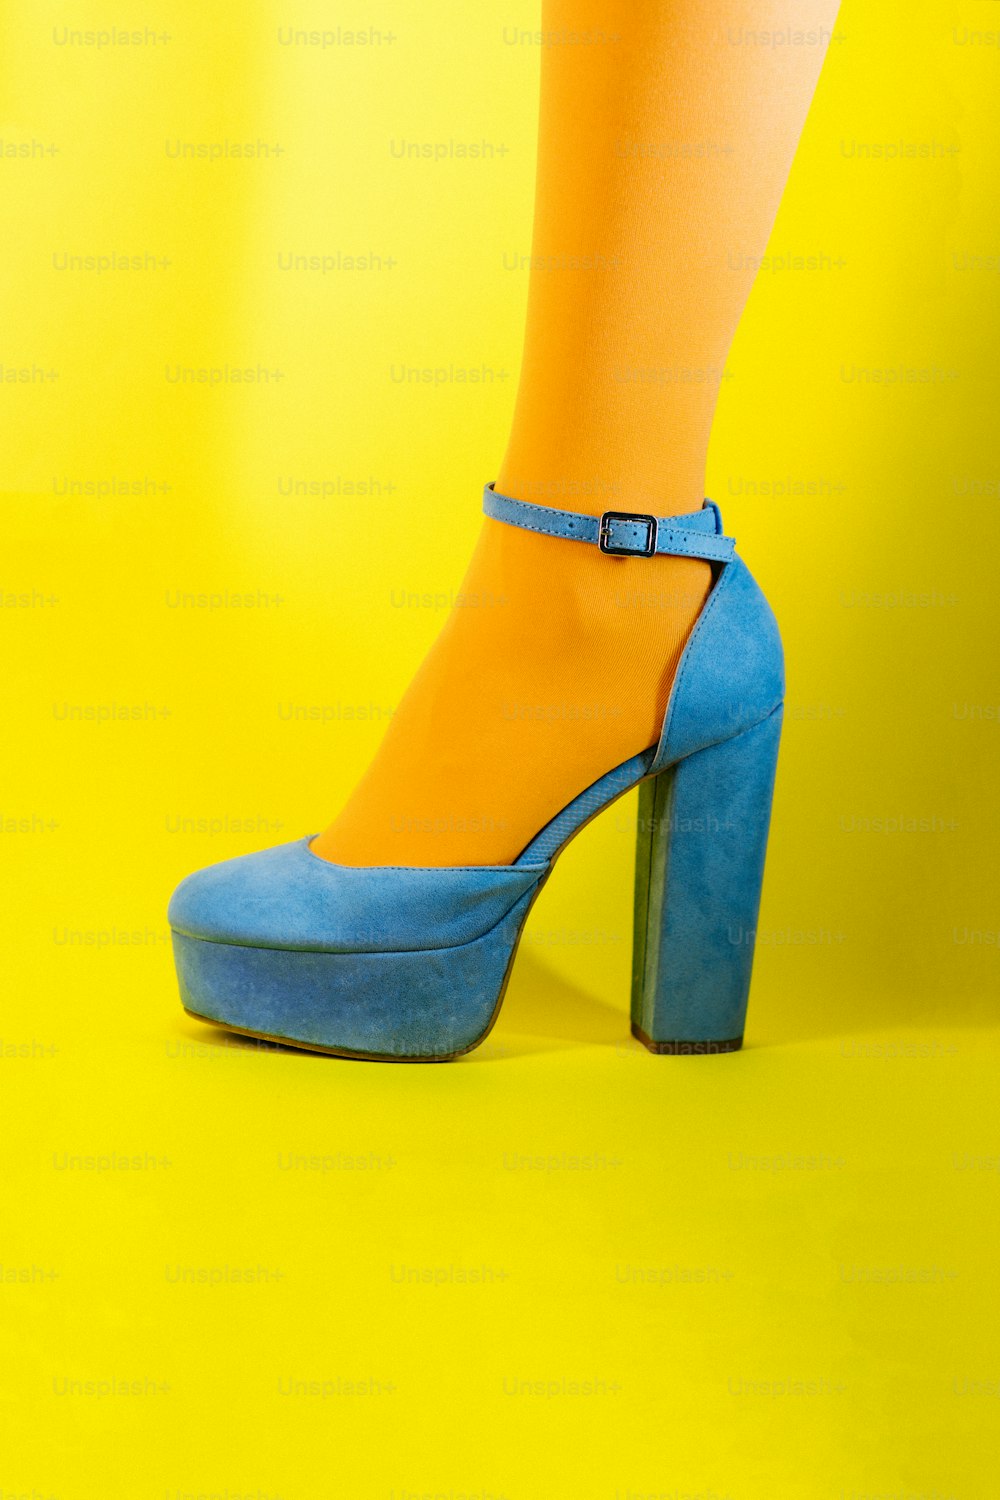 Las piernas una tacones altos azules y amarillos – Zapato Imagen en Unsplash